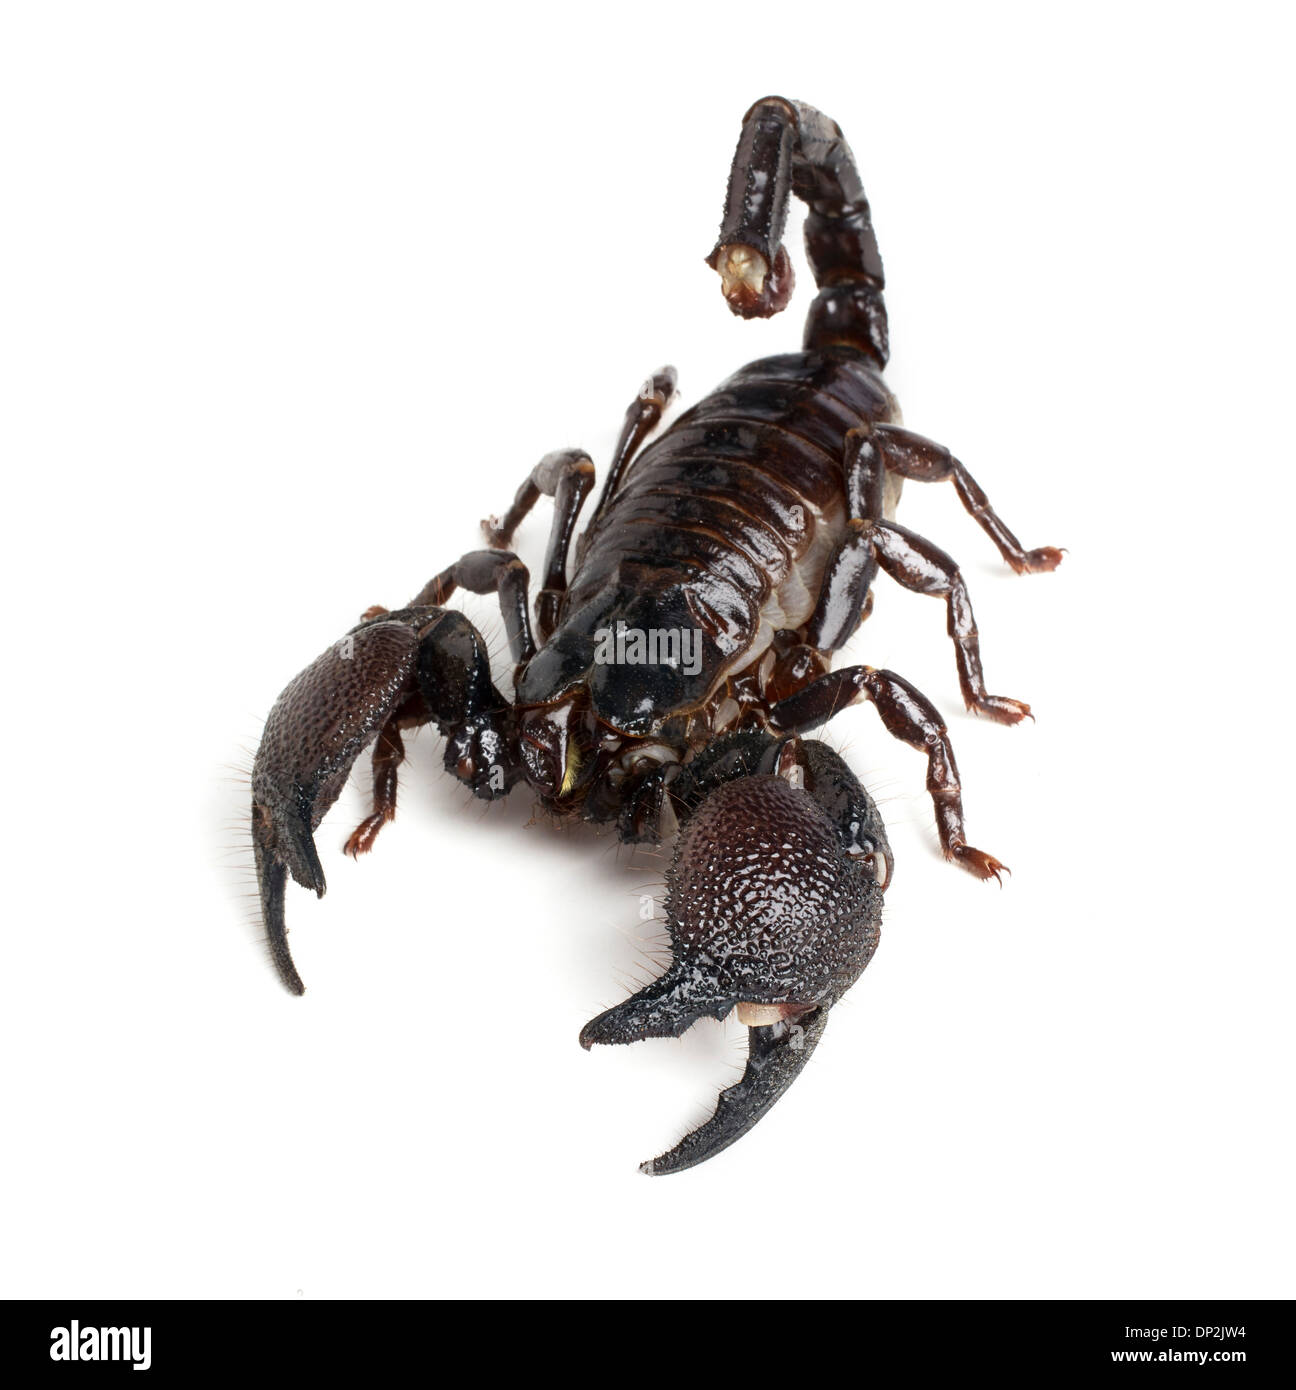 emperor scorpion DP2JW4